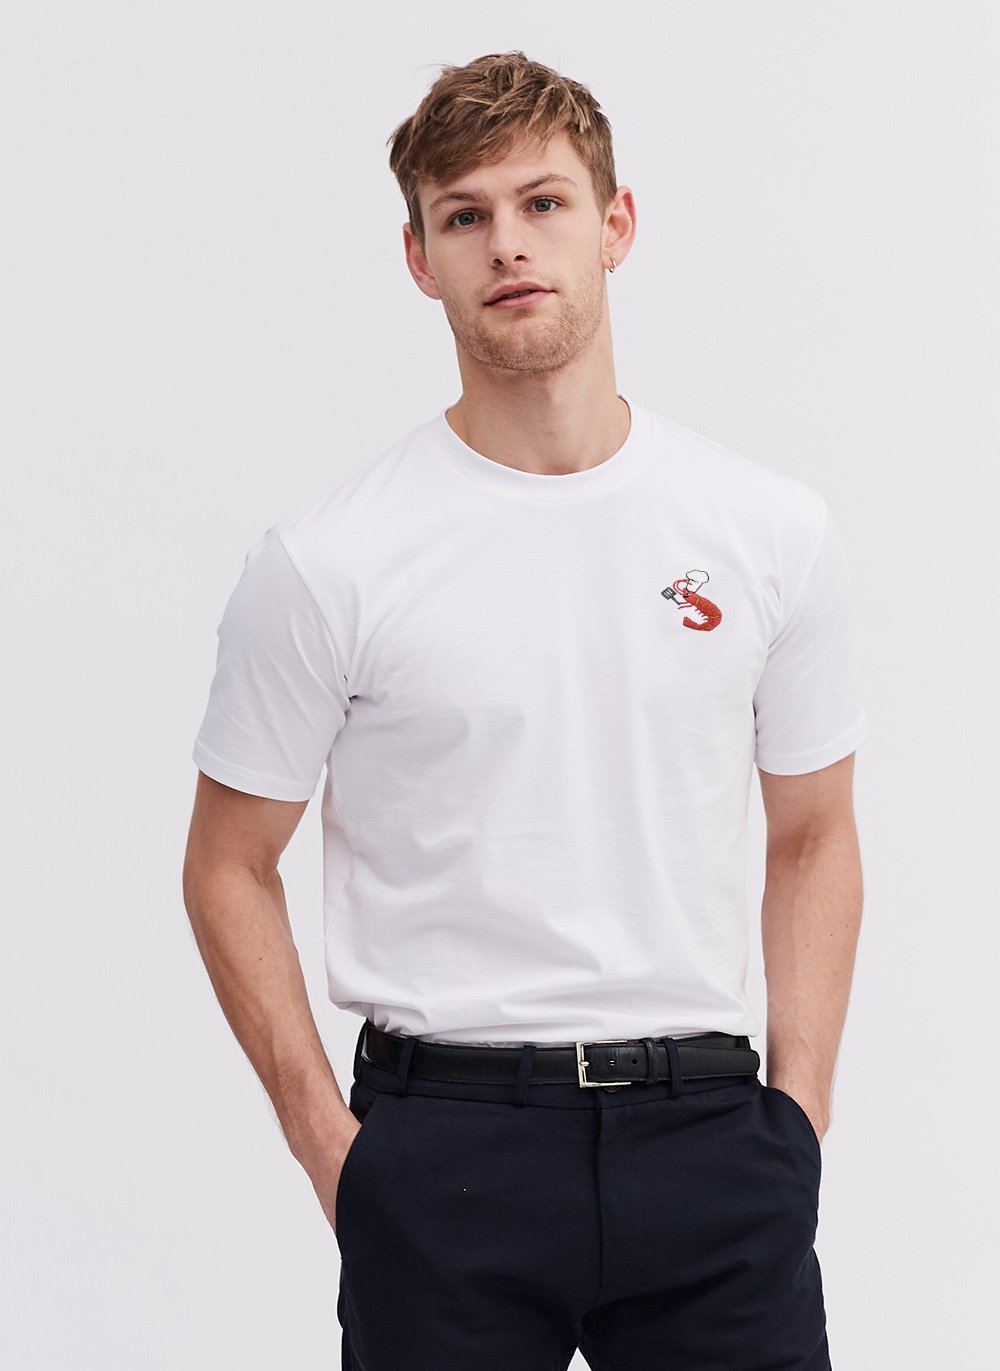 T Shirt | Prawn Jacques | White & Percival Menswear